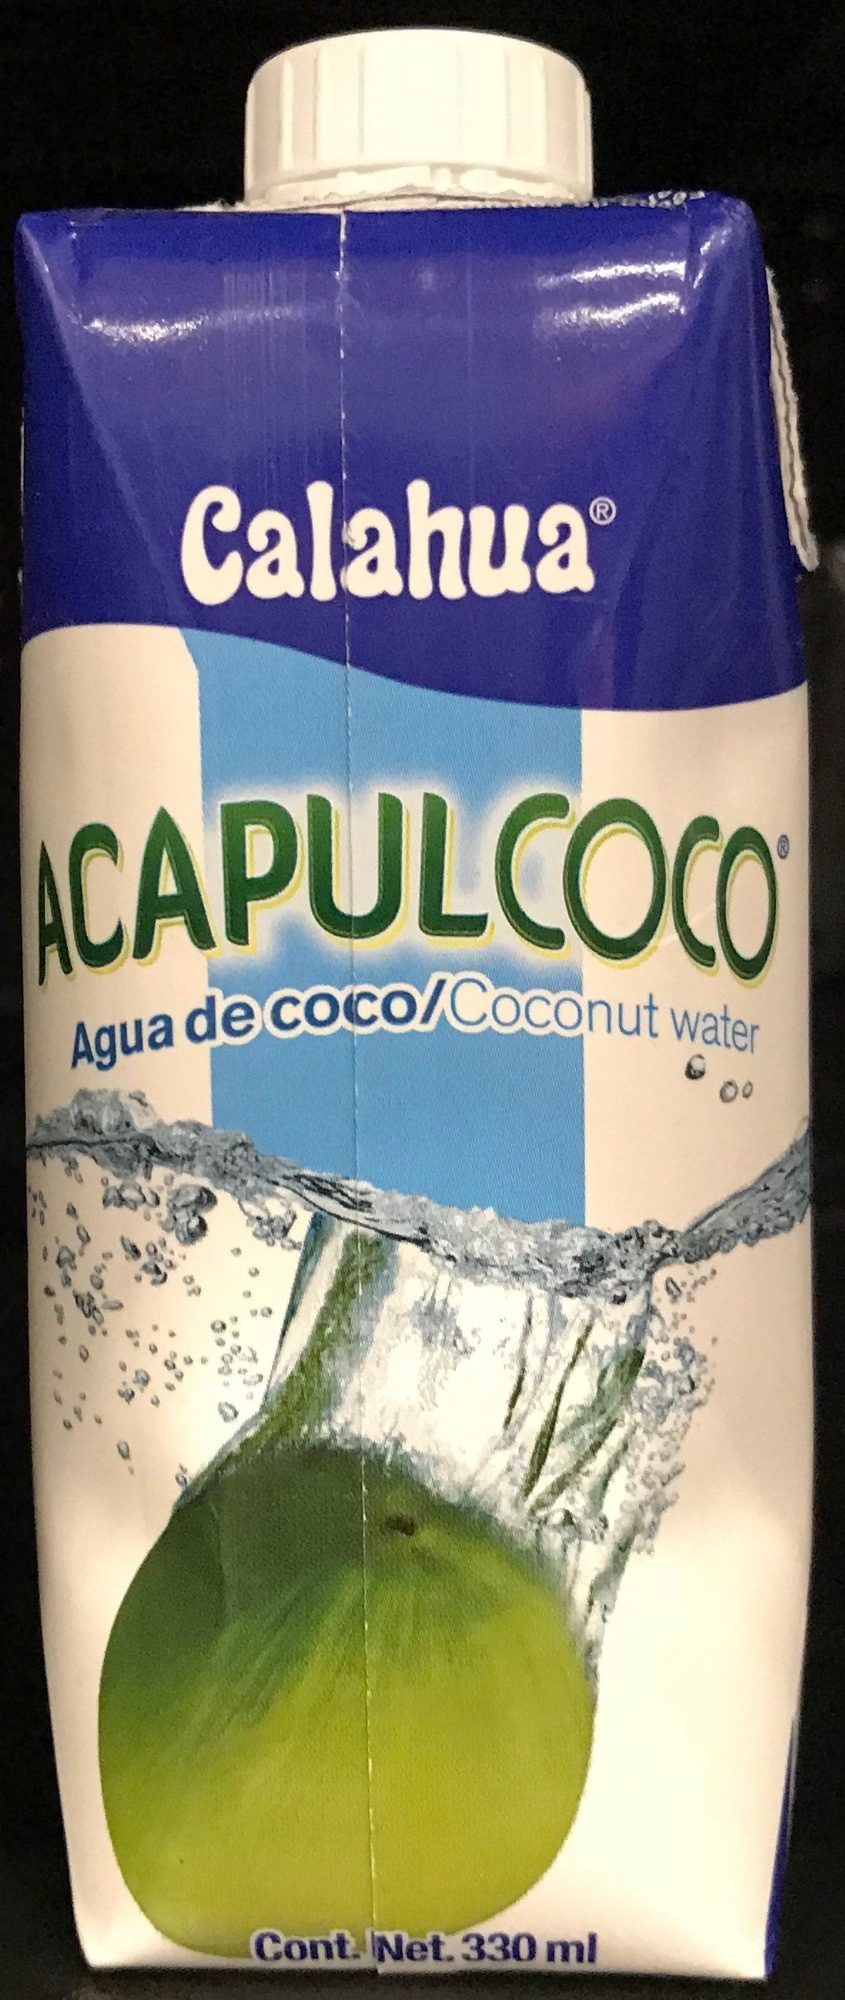 Acapulcoco - Product - es